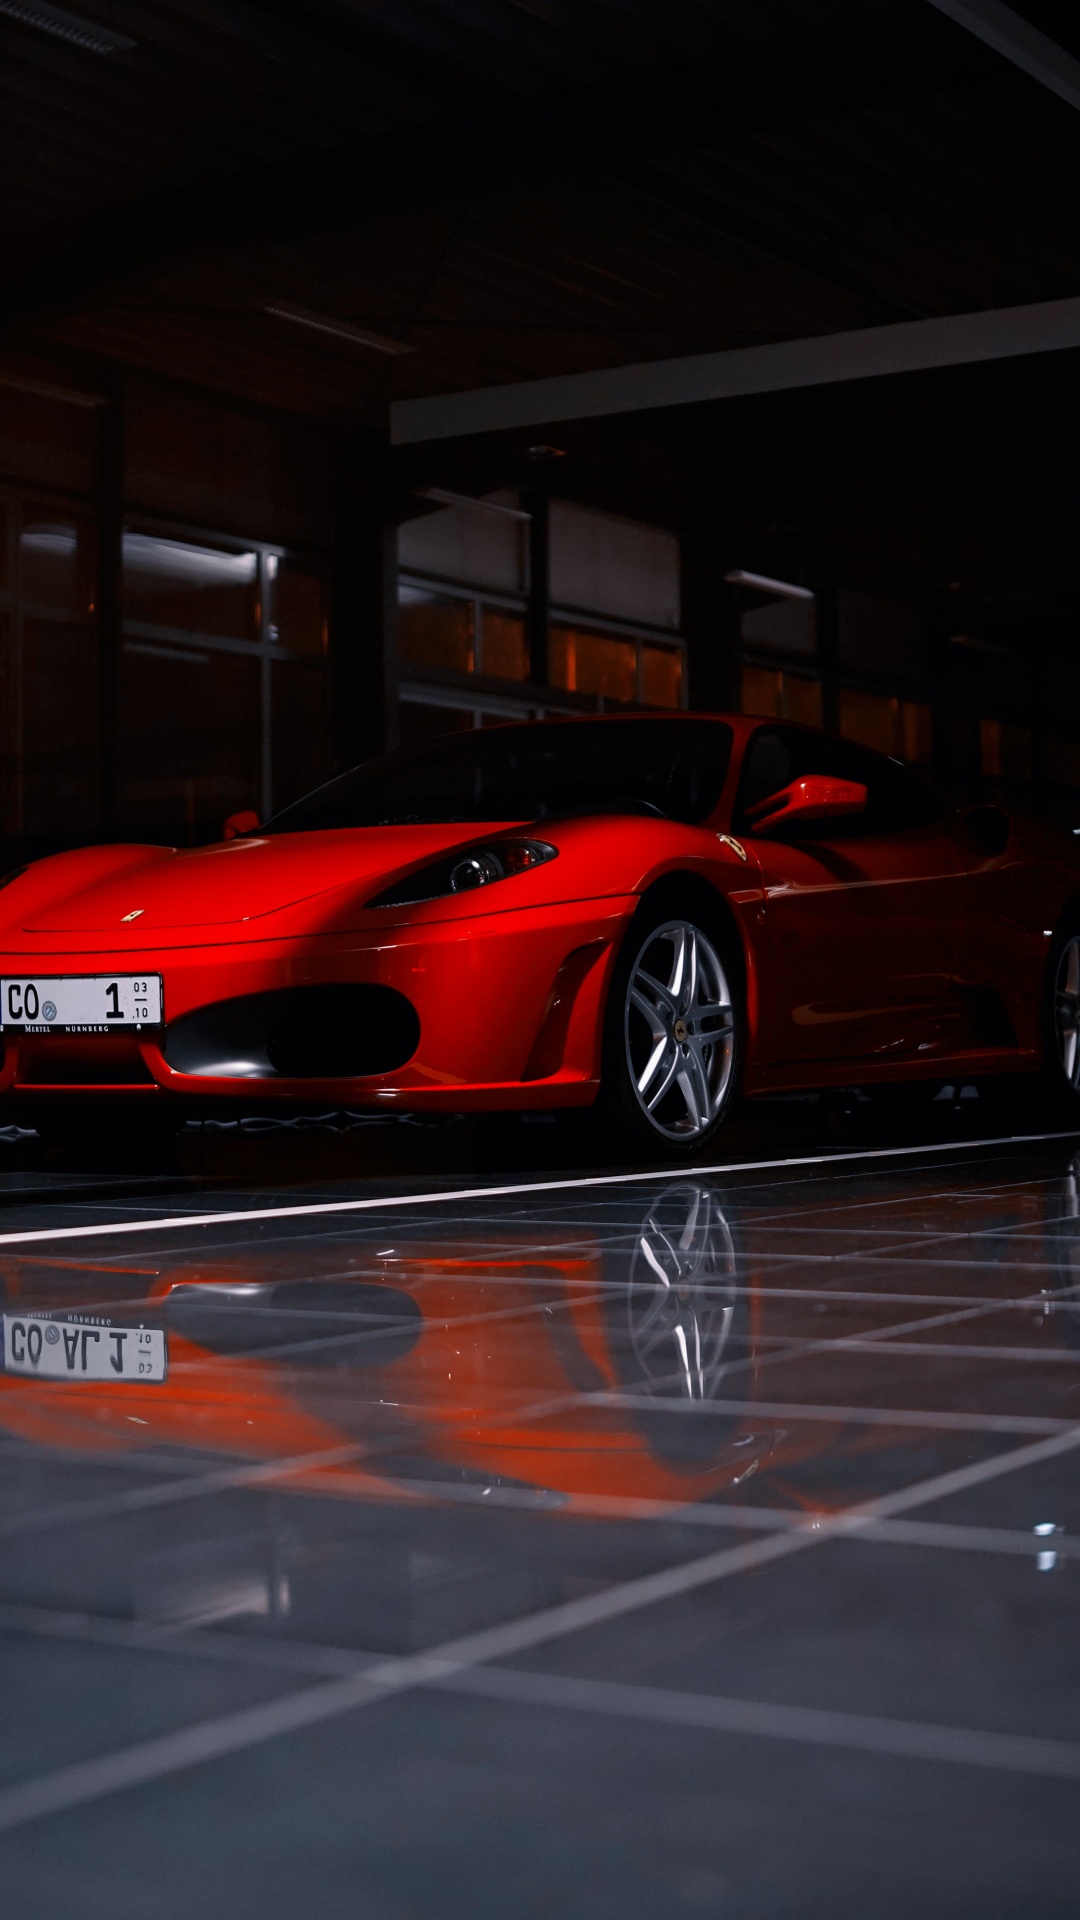 Ferrari 458 Italia Rojo Estacionado en el Estacionamiento. Wallpaper in 1080x1920 Resolution